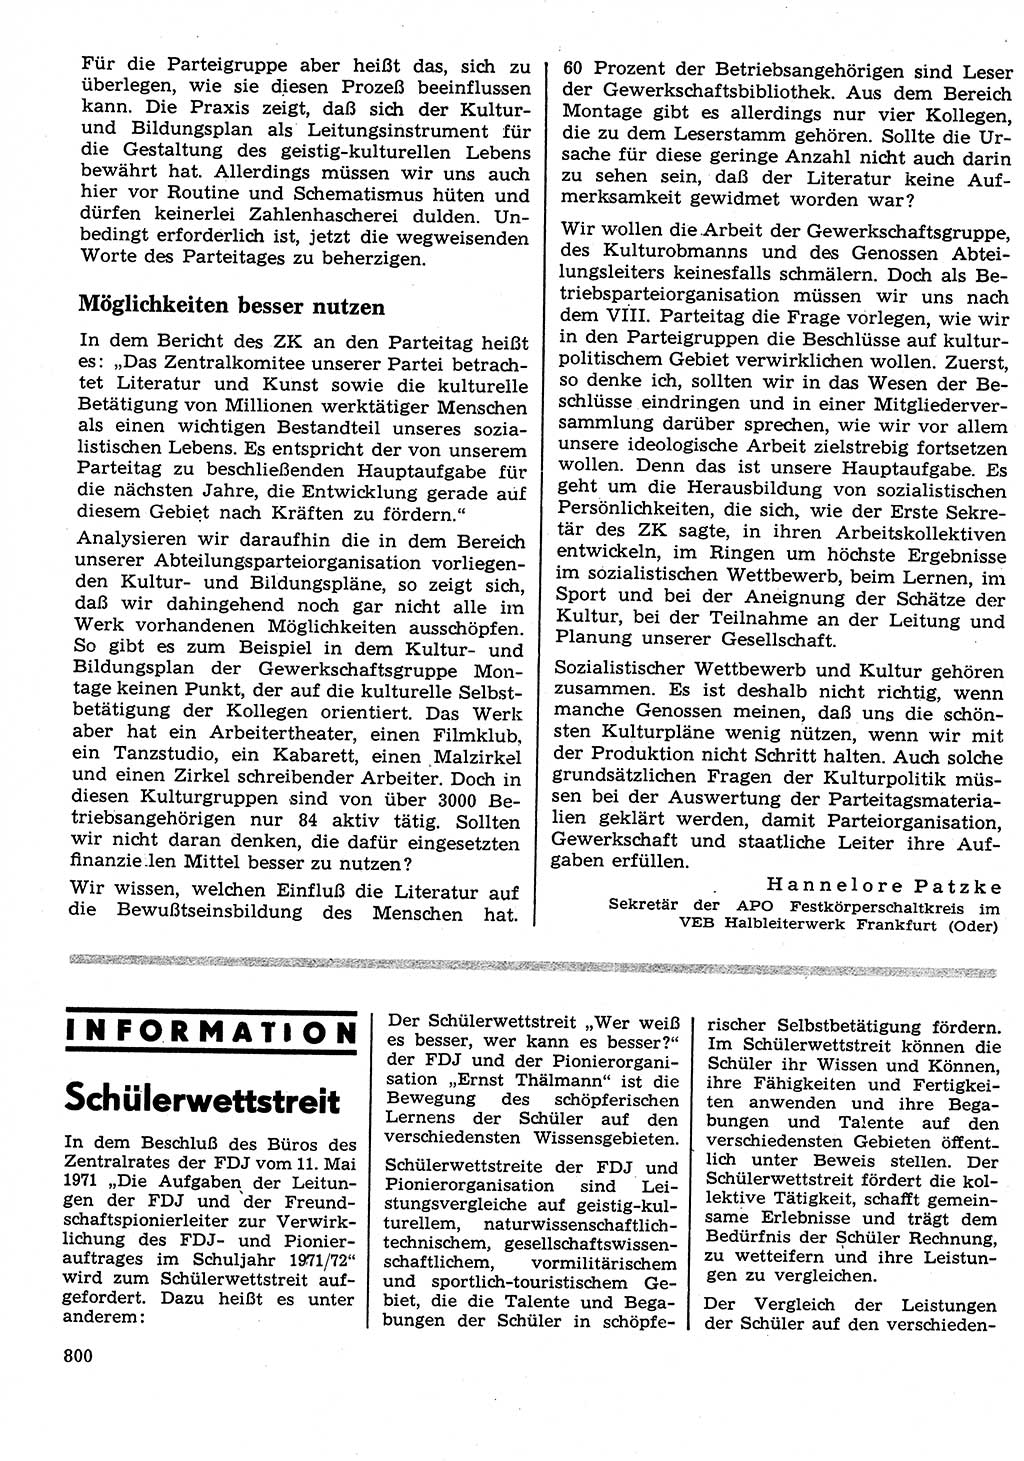 Neuer Weg (NW), Organ des Zentralkomitees (ZK) der SED (Sozialistische Einheitspartei Deutschlands) für Fragen des Parteilebens, 26. Jahrgang [Deutsche Demokratische Republik (DDR)] 1971, Seite 800 (NW ZK SED DDR 1971, S. 800)